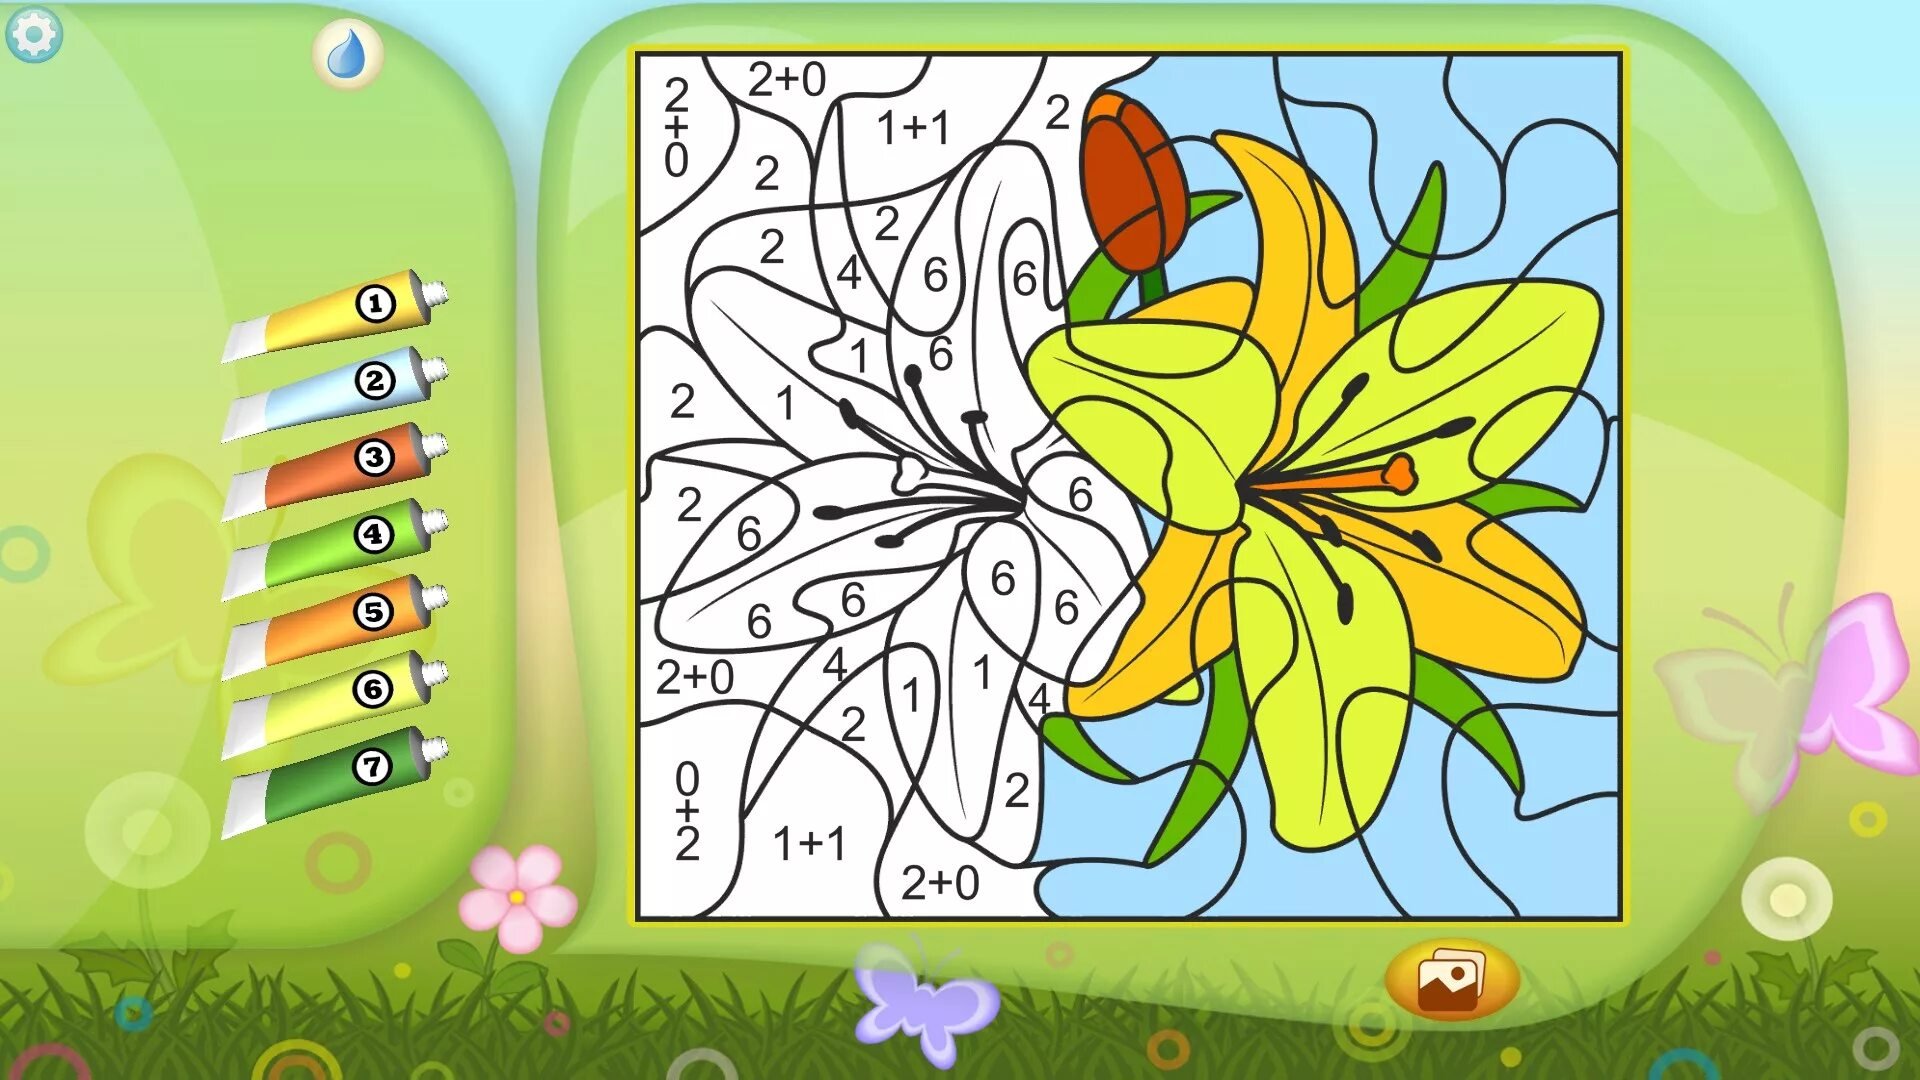 Игра раскрашивать раскраску. Игра цветы разукрашивать по номерам. Игры для детей: раскраски. Раскраска по цветам для детей. Рисование по цветам для детей.